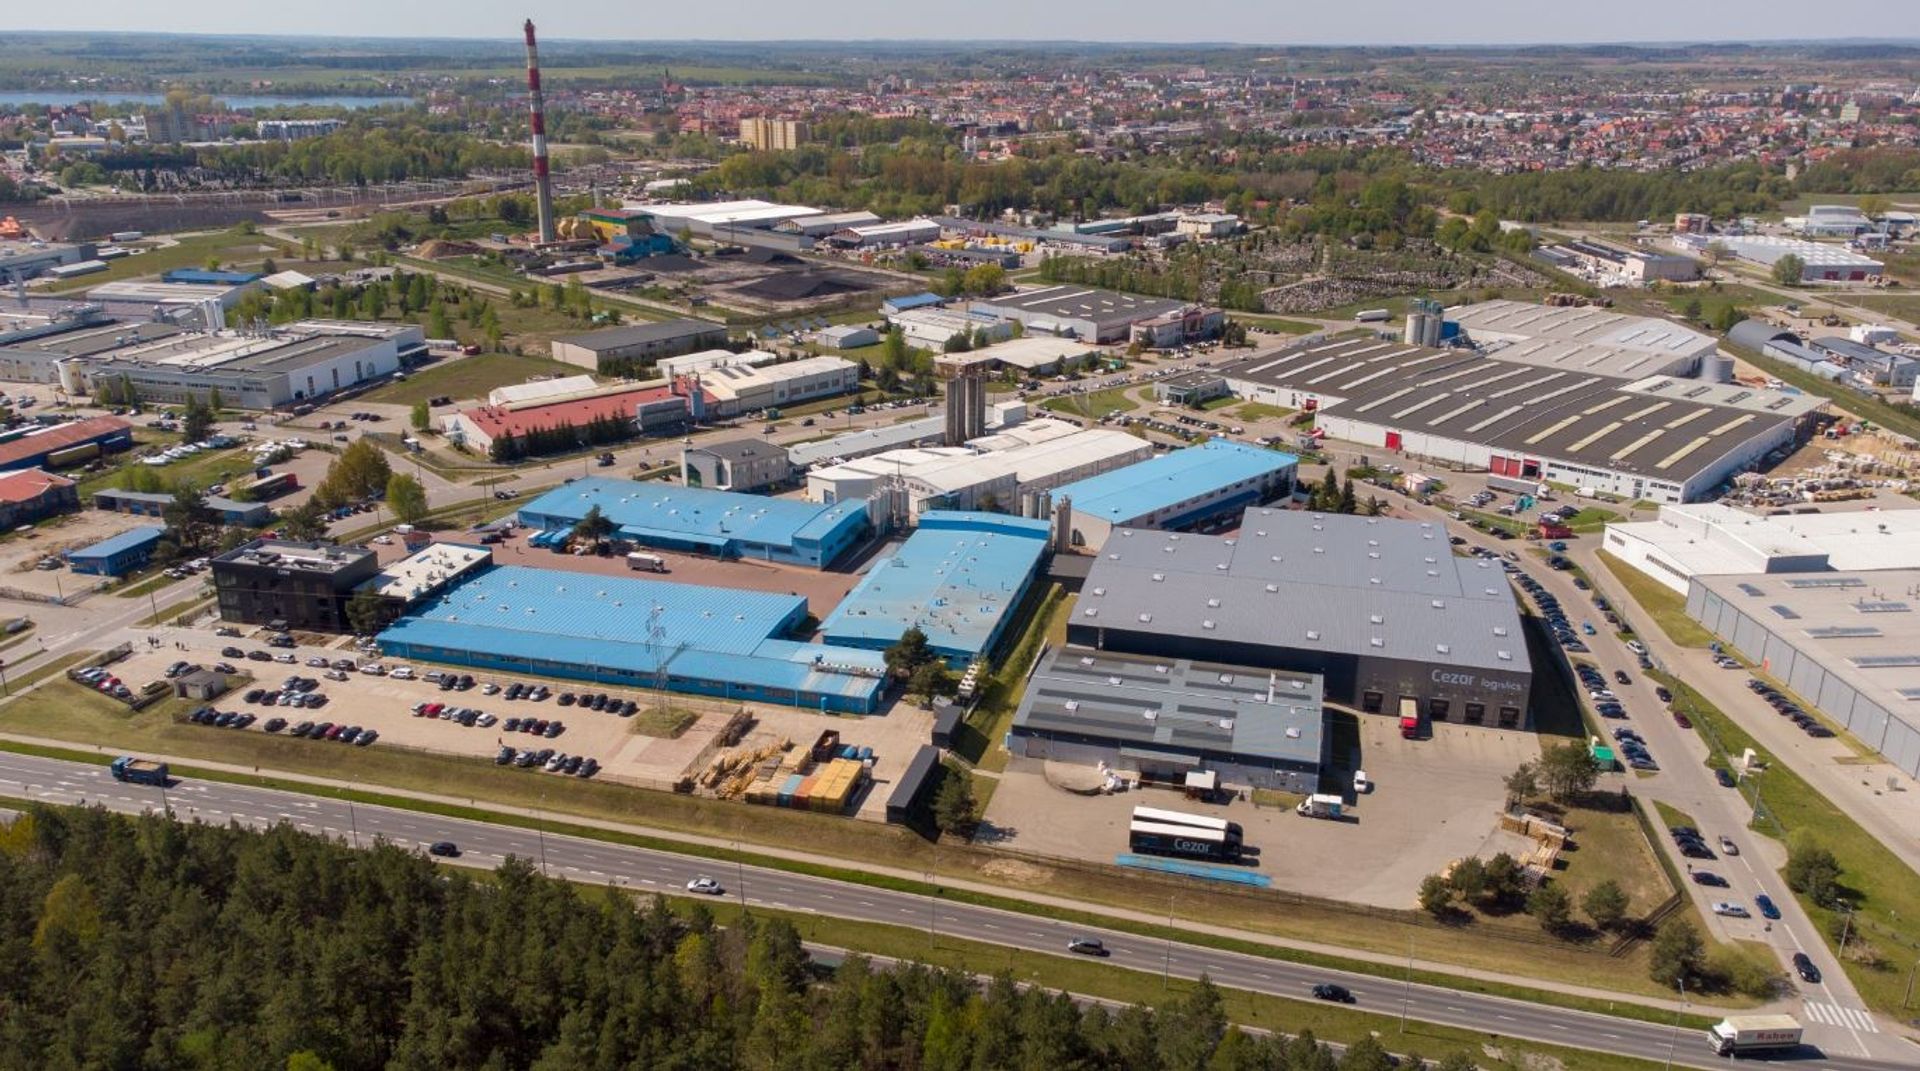 Znana, duża polska firma Cezar rozbuduje fabrykę w Ełku